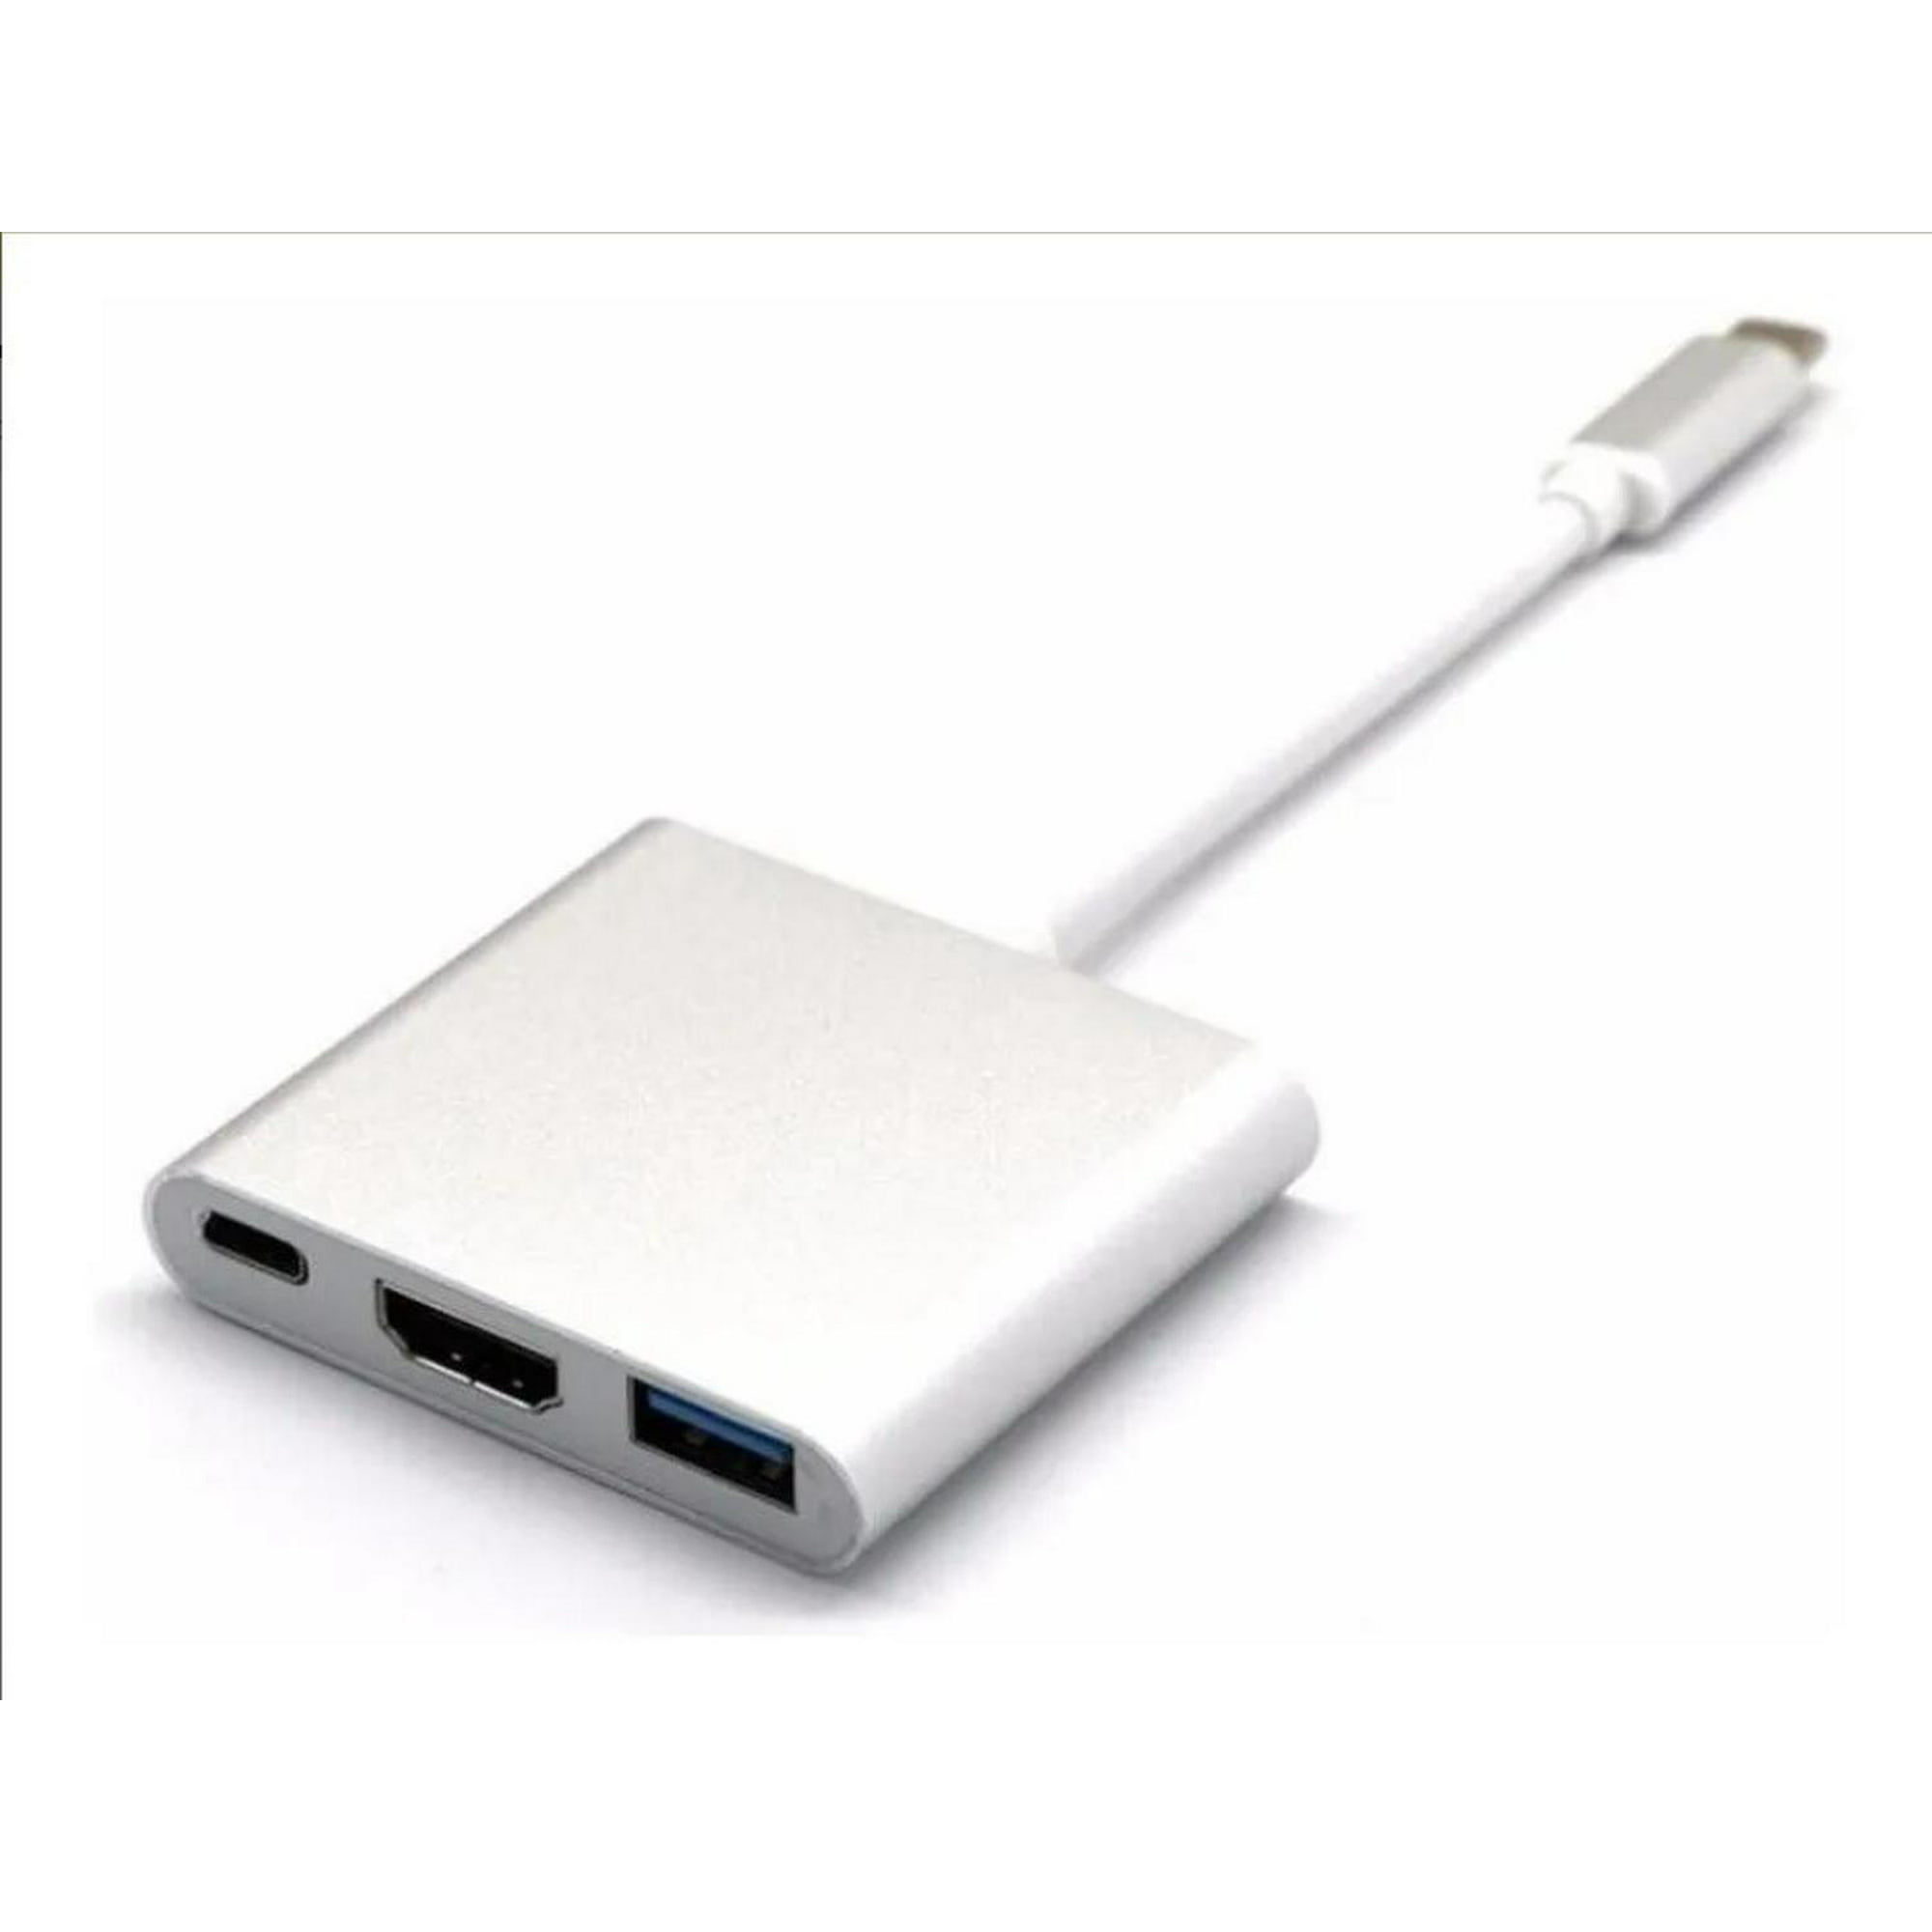 Pack Adaptador 4 en 1 USB C a HDMI 4K VGA USB 3.0 PD Carga y Cable